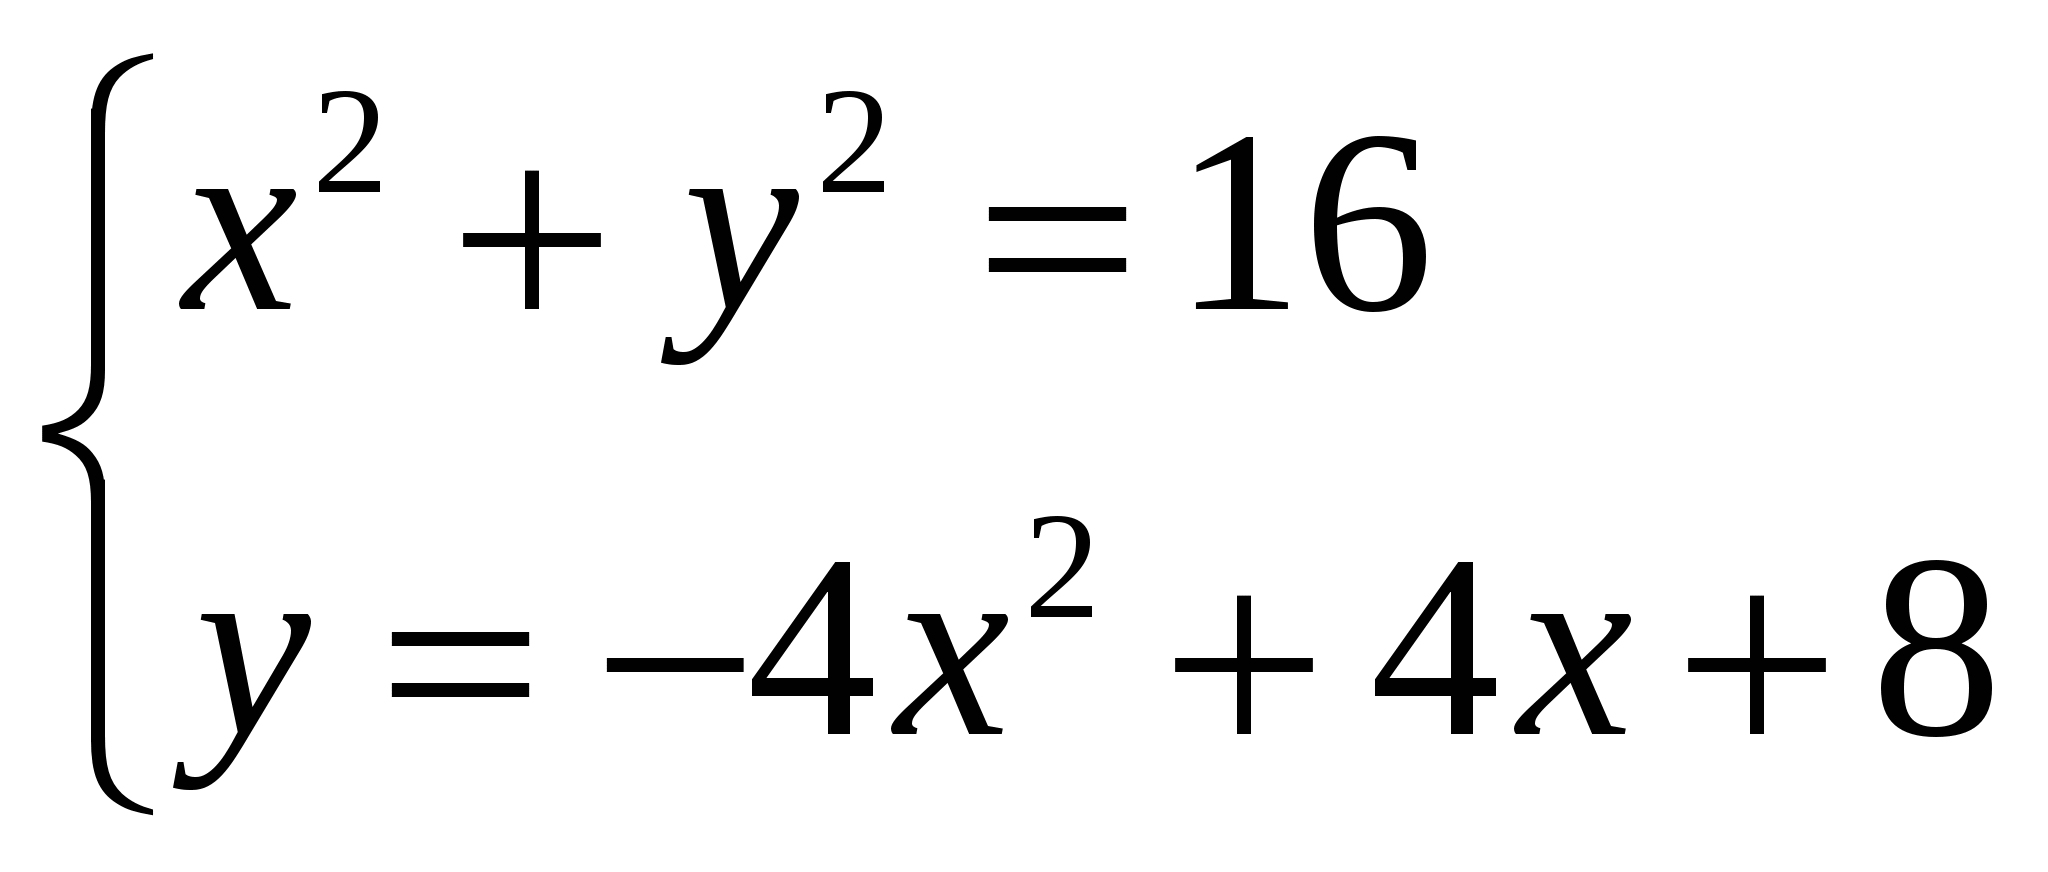 Тема урока Приближенное решение уравнений